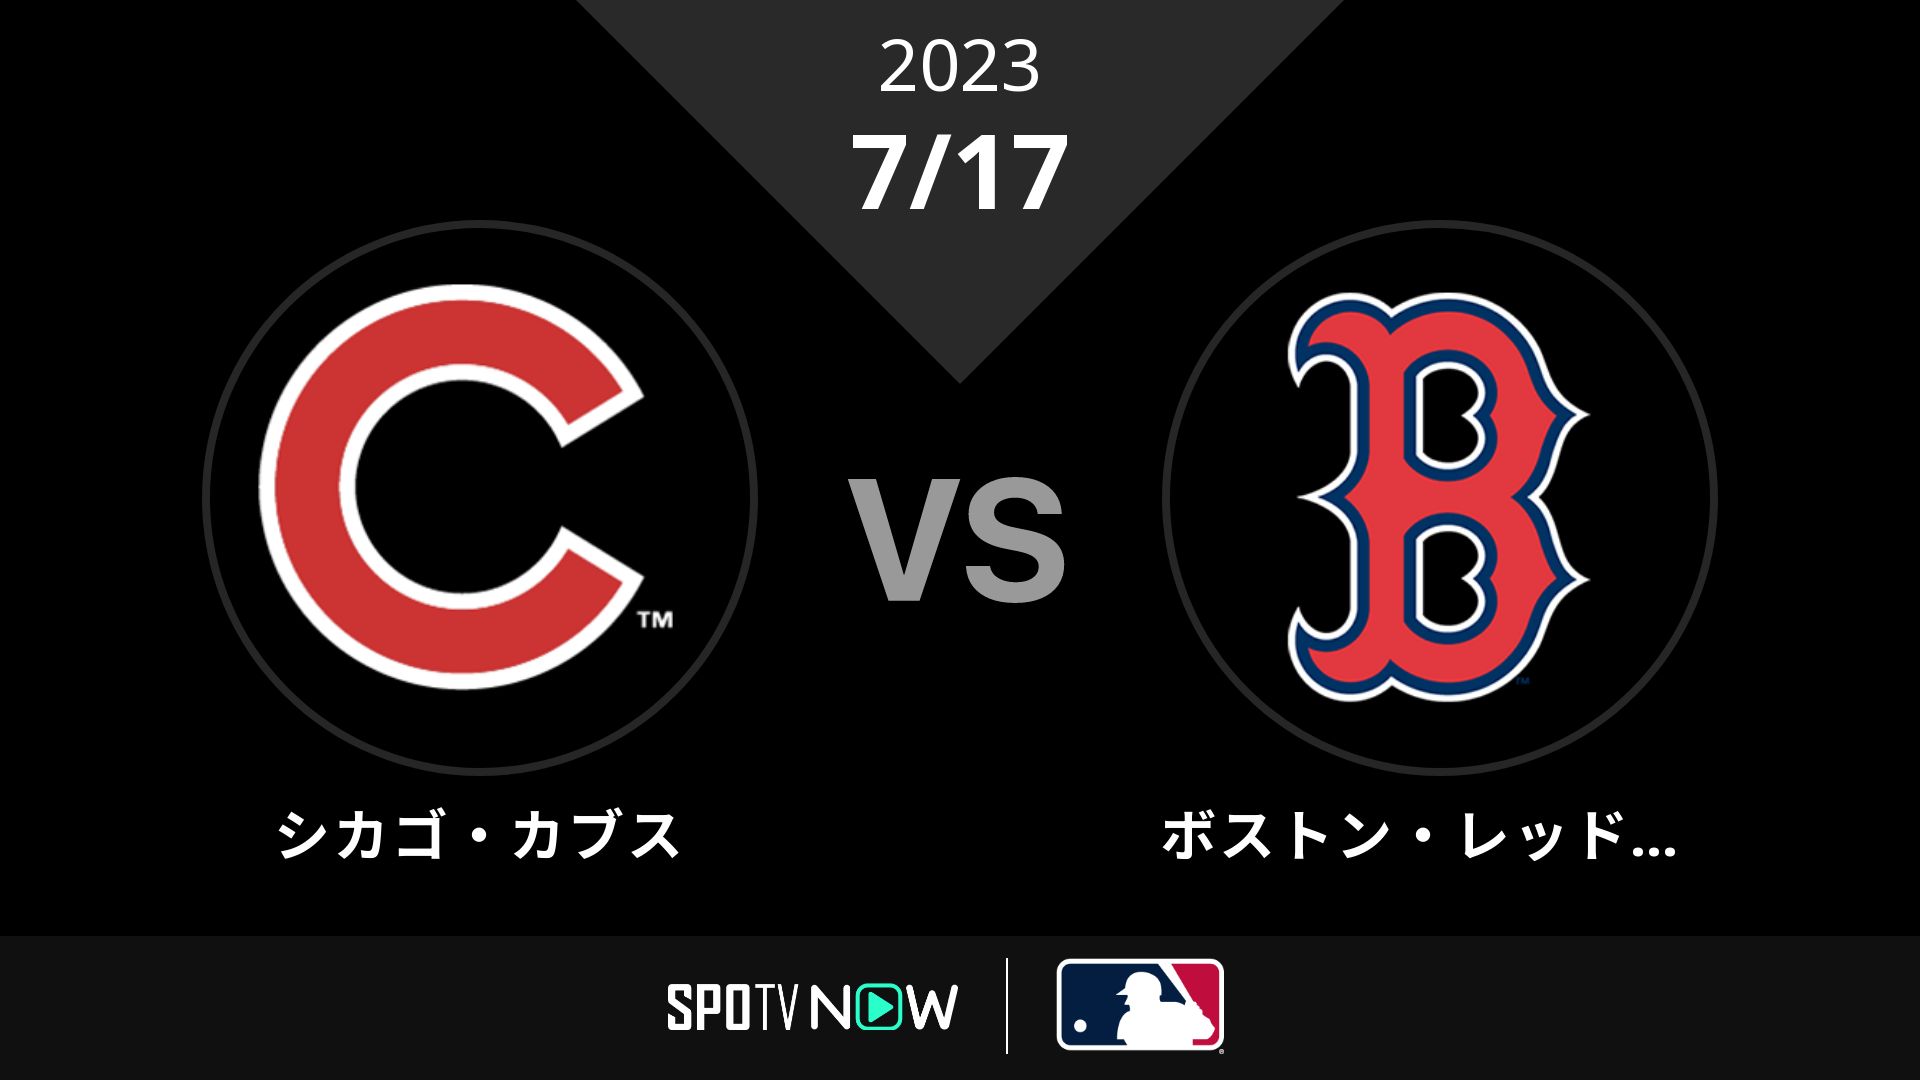 2023/7/17 カブス vs Rソックス [MLB]